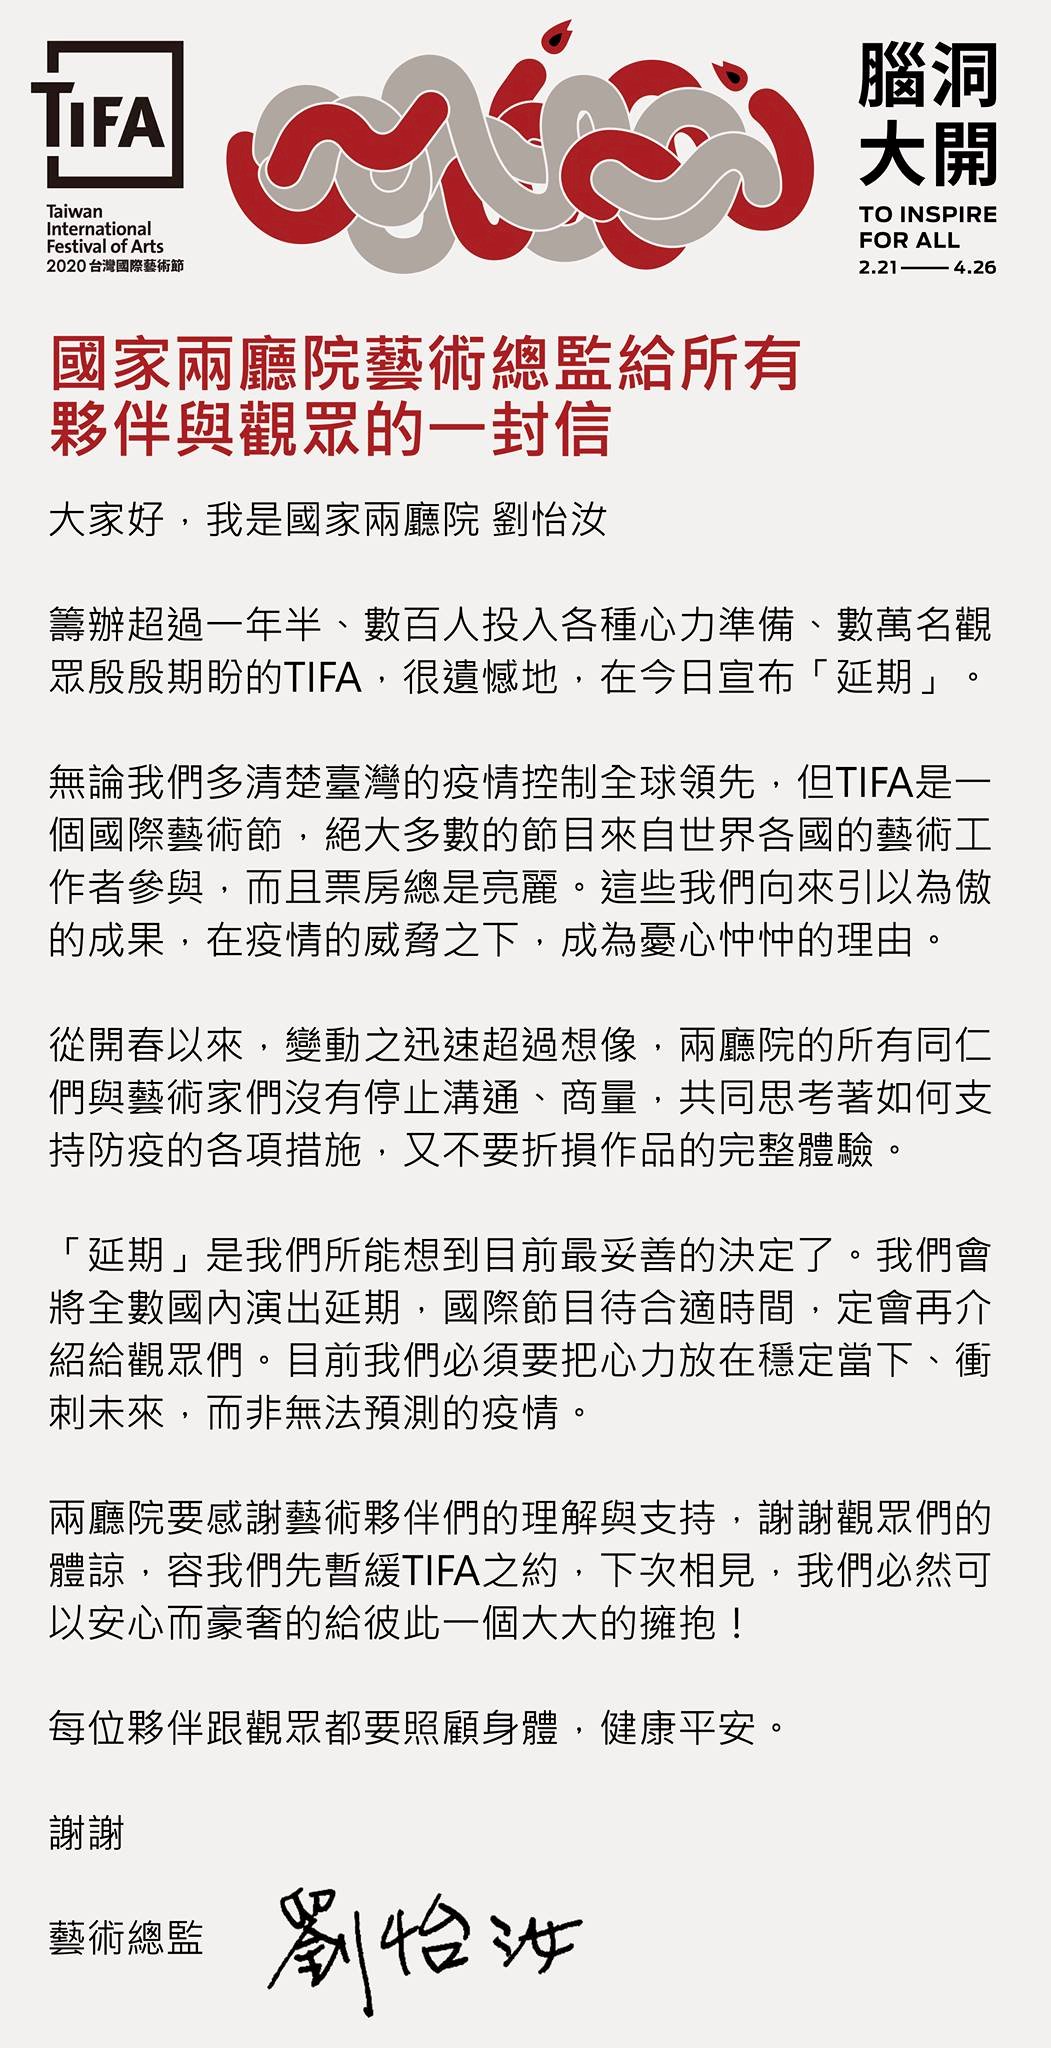 兩廳院：2020TIFA台灣國際藝術節全數延期